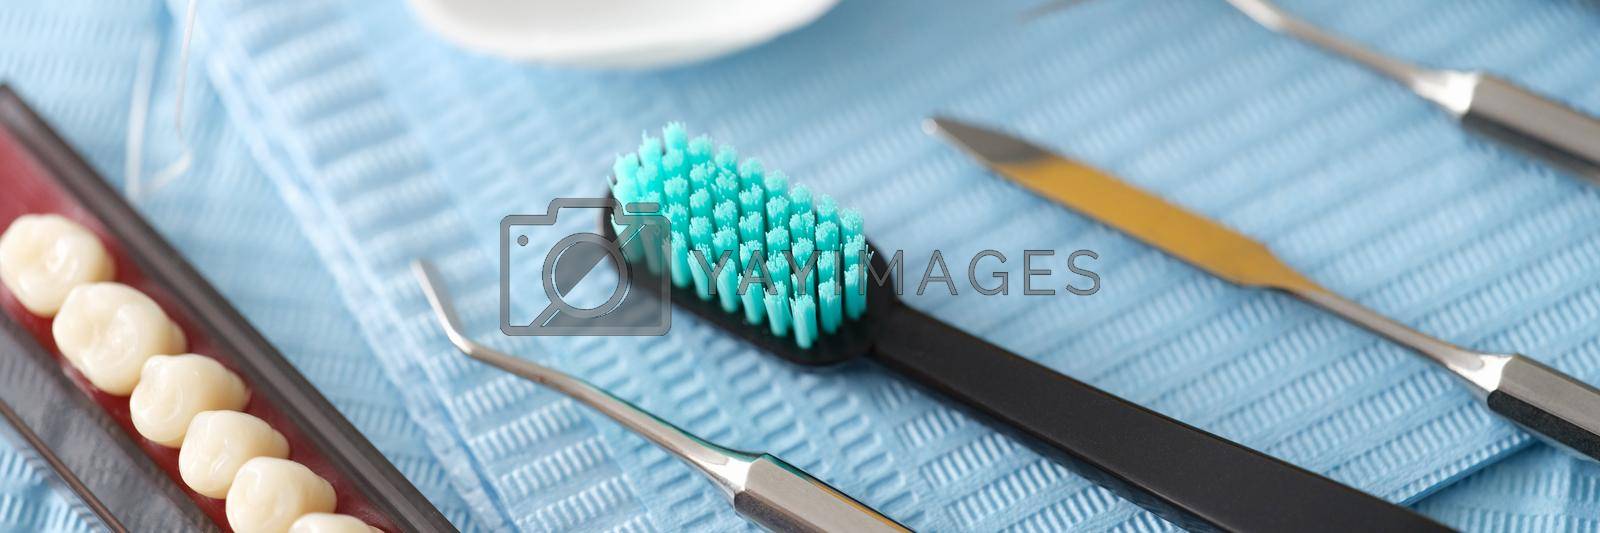 Dental instrument dental floss and dental implants. Dentist services concept